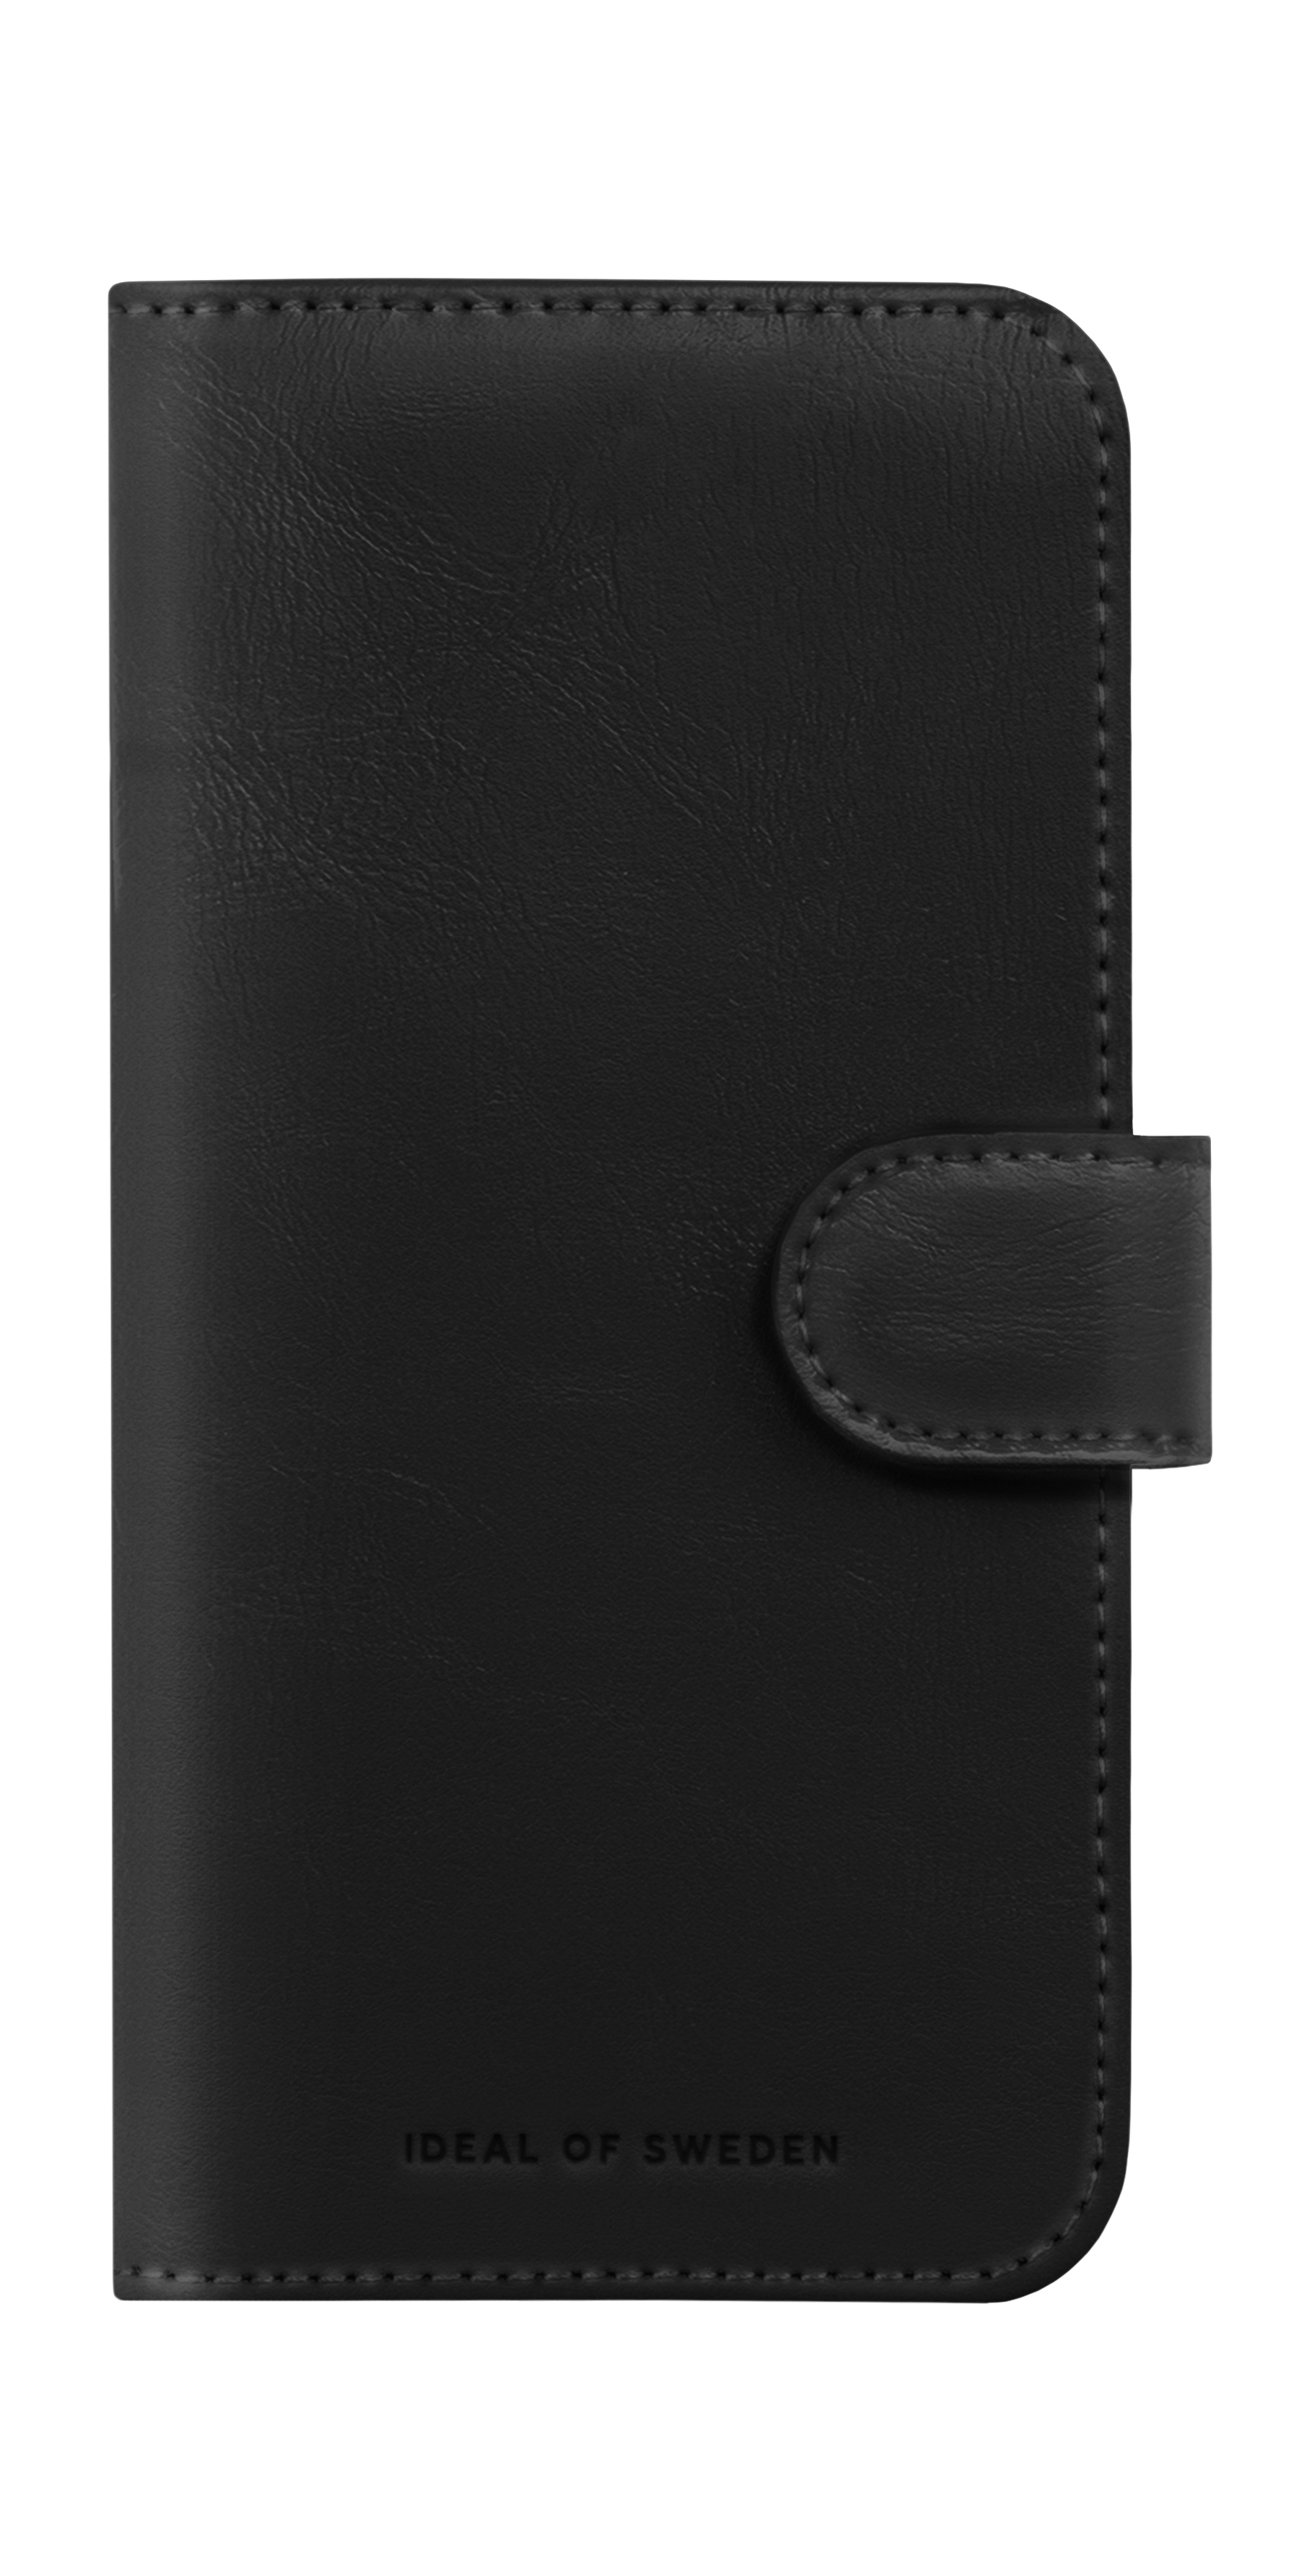 IDEAL OF SWEDEN Magnet Wallet+, Apple, iPhone Bookcover, Black 15